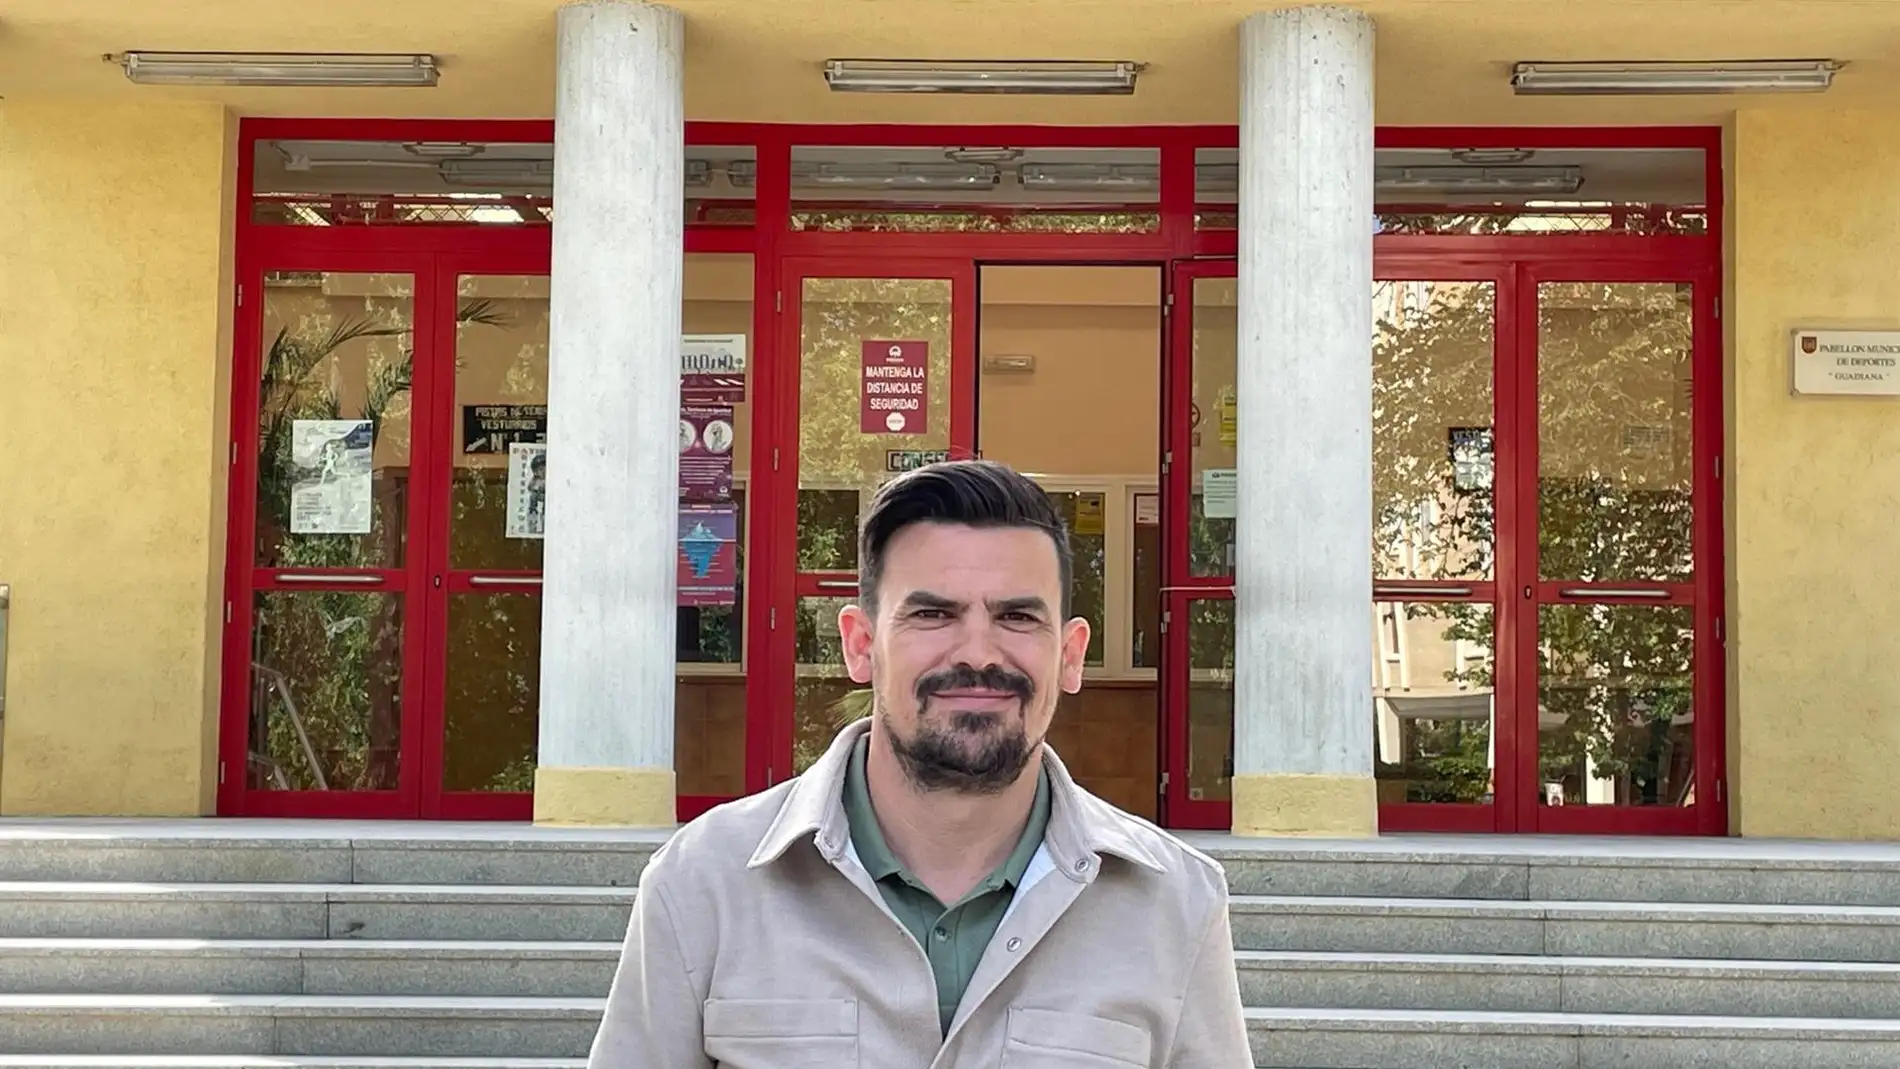 El portavoz del PP de Mérida, Santi Amaro, frente al pabellón deportivo Guadiana